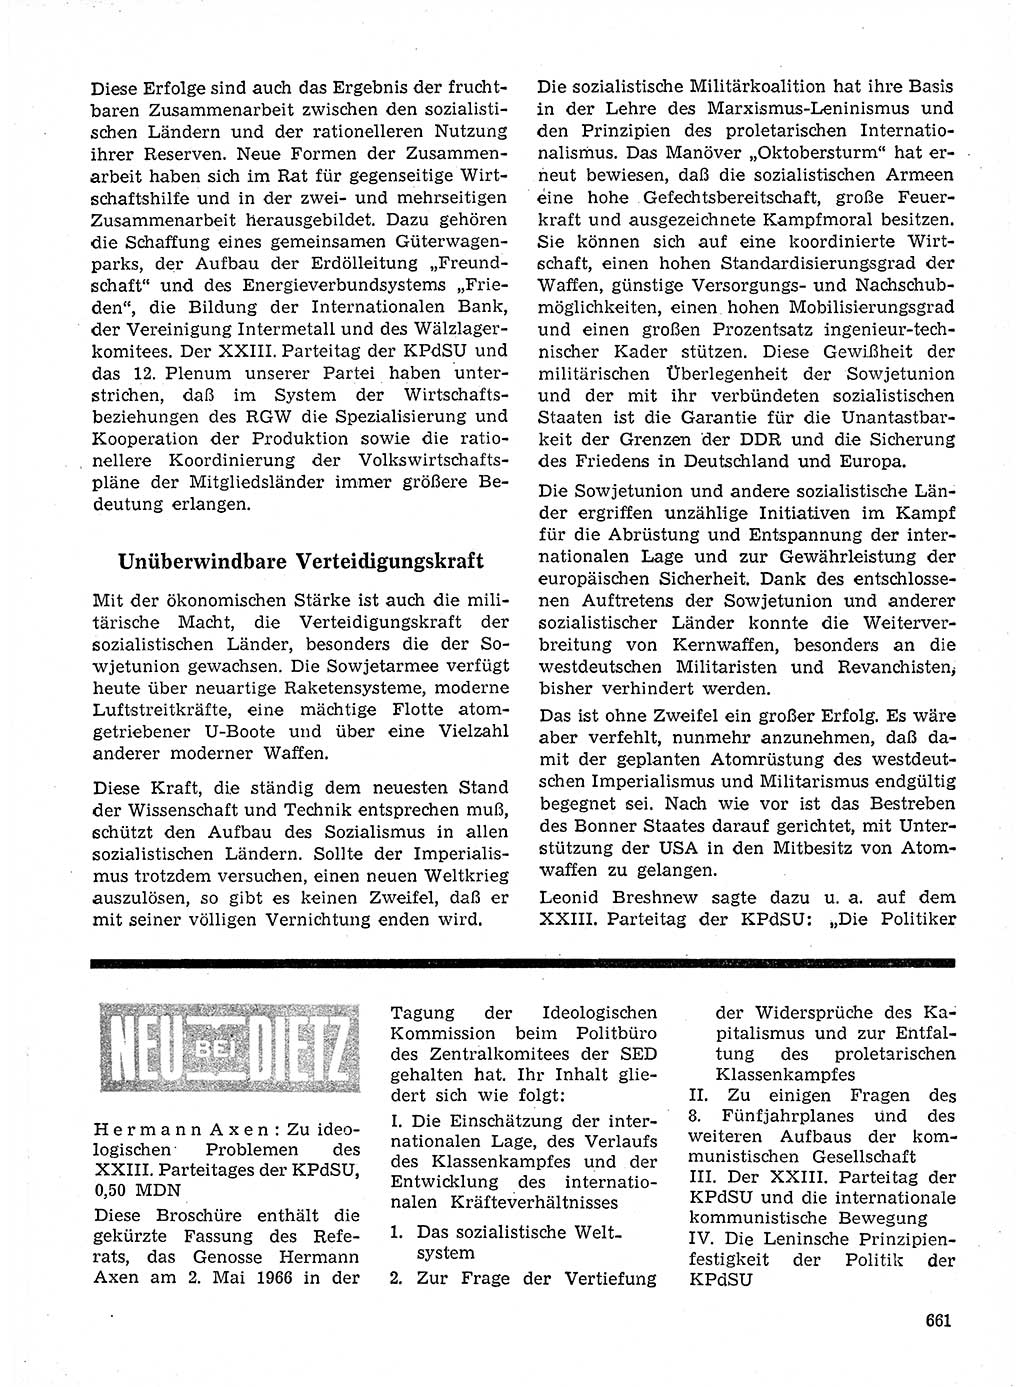 Neuer Weg (NW), Organ des Zentralkomitees (ZK) der SED (Sozialistische Einheitspartei Deutschlands) für Fragen des Parteilebens, 21. Jahrgang [Deutsche Demokratische Republik (DDR)] 1966, Seite 661 (NW ZK SED DDR 1966, S. 661)